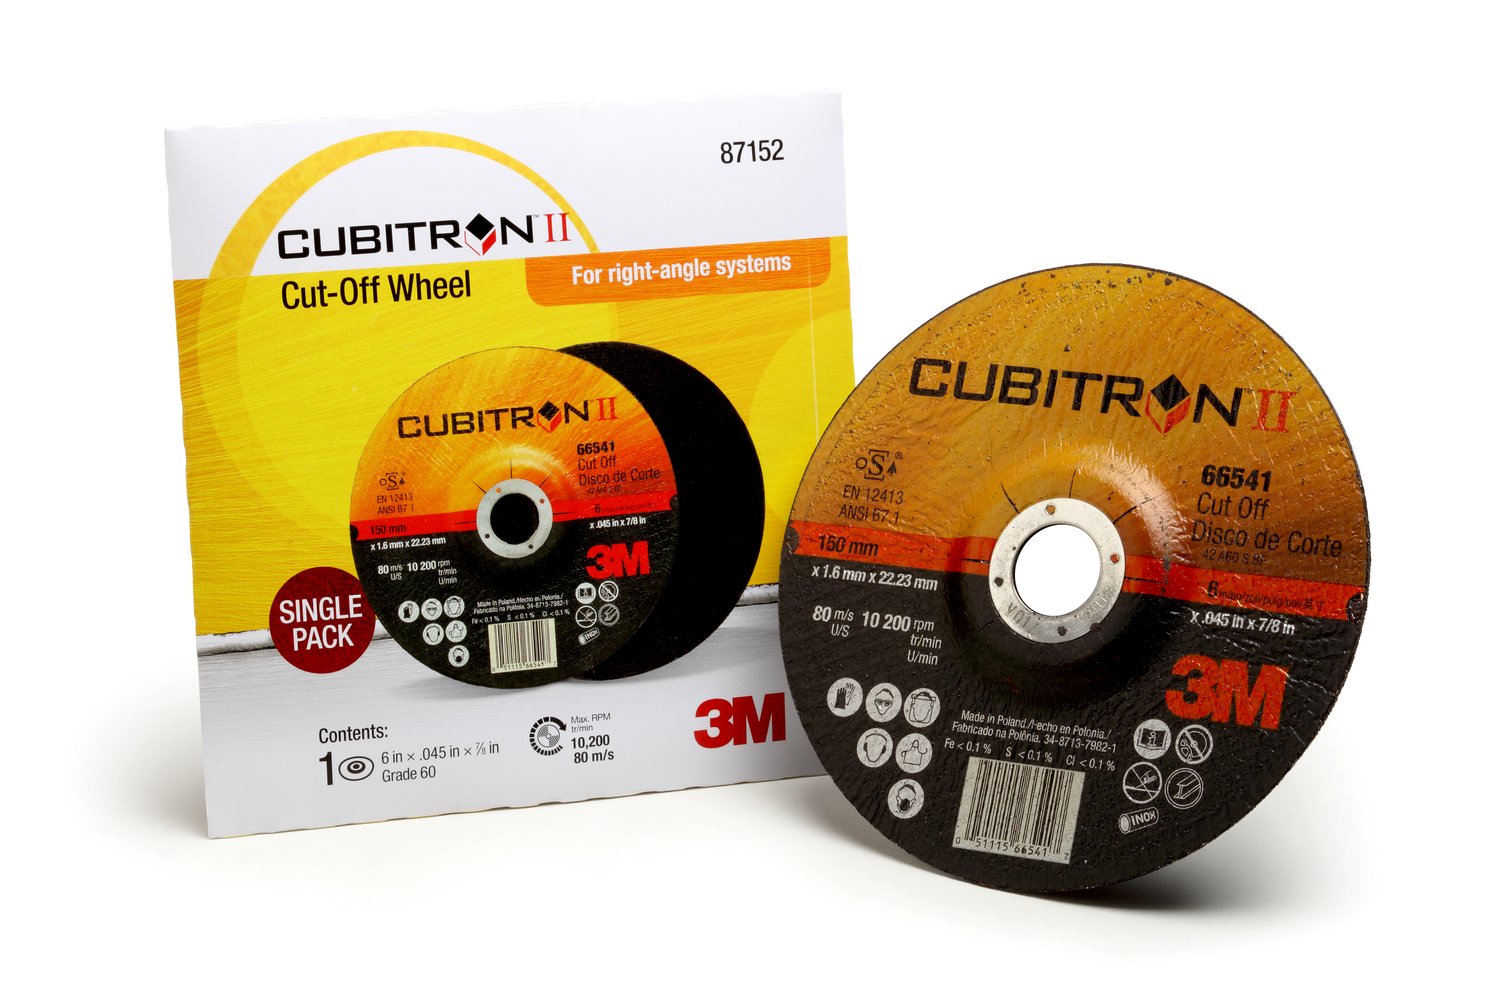 7100119177 - 3M Cubitron II Cut Off Wheel, 87152, T27, 6 in x .045 in x 7/8 in,
Single Pack, 10 ea/Case